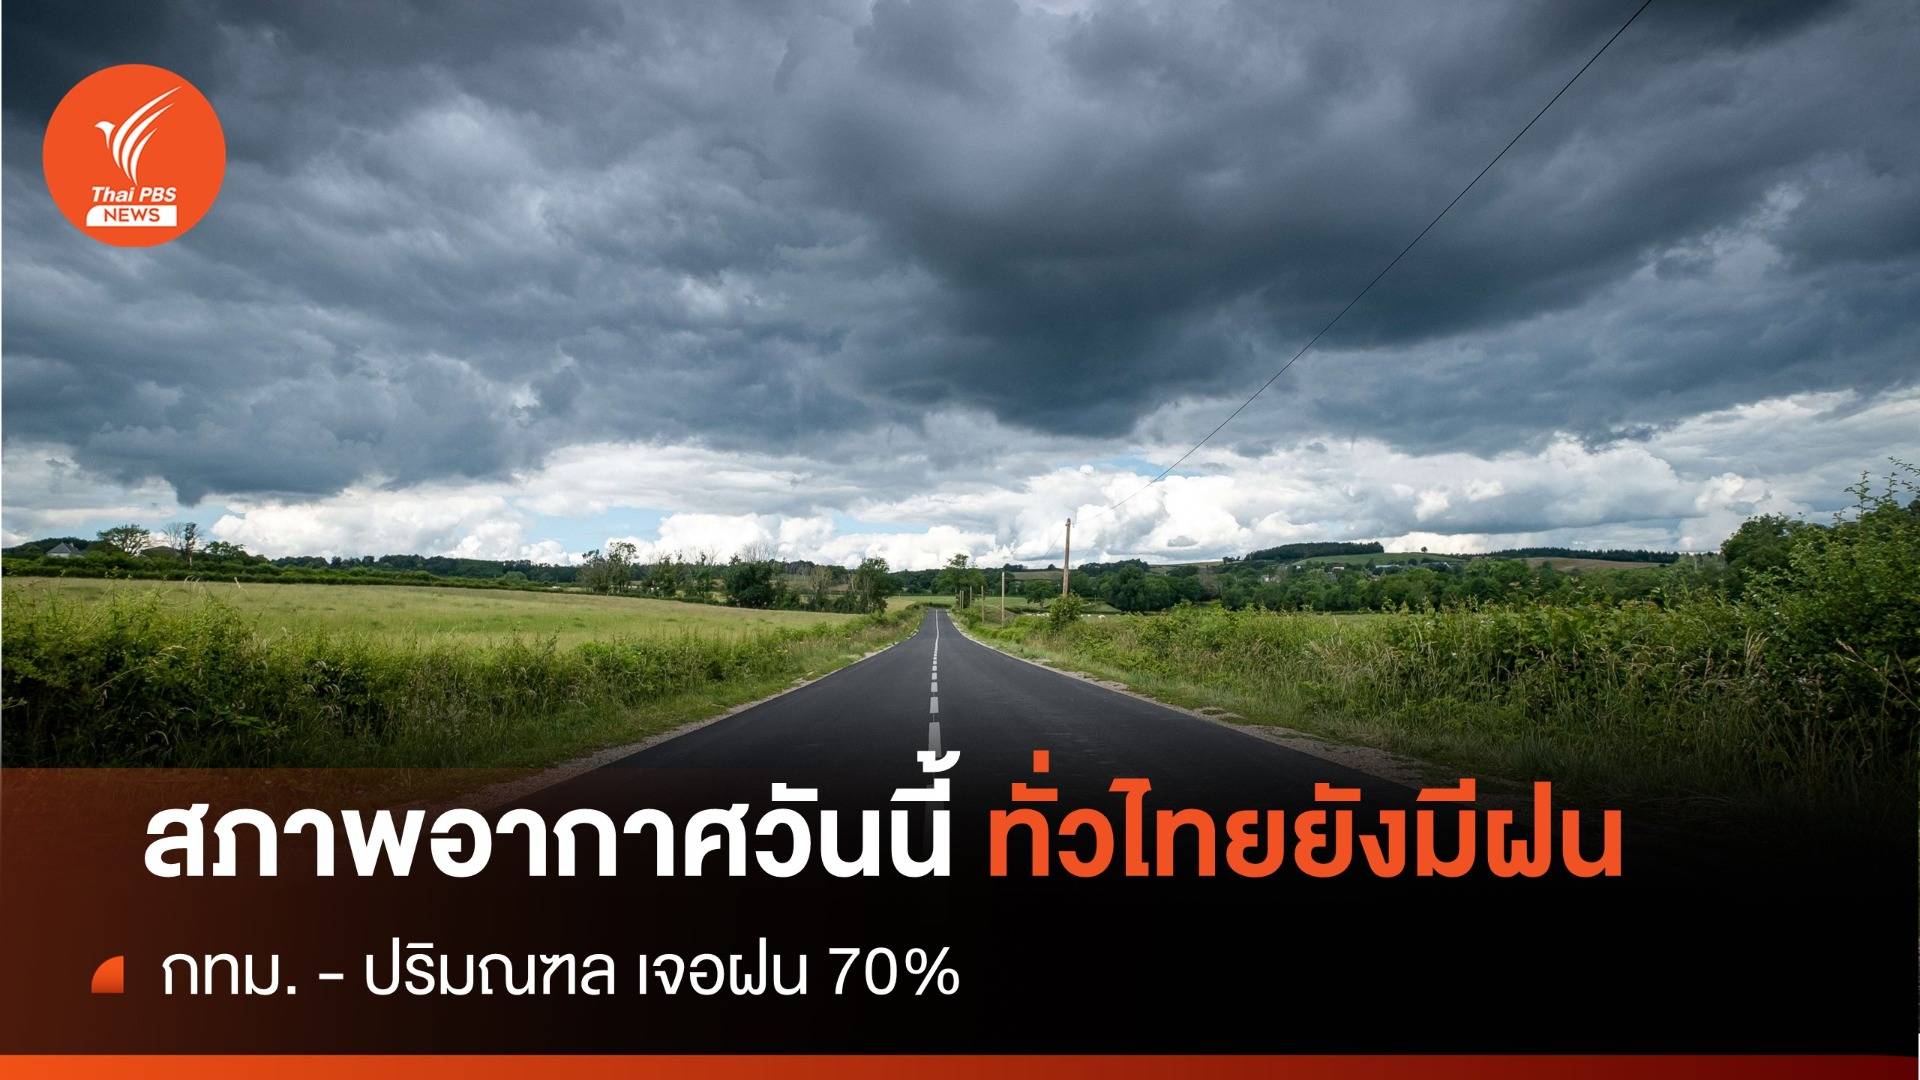 สภาพอากาศวันนี้ ทั่วไทยยังเจอฝนตกหนักในบางพื้นที่ กทม. - ปริมณฑล ฝน 70% 